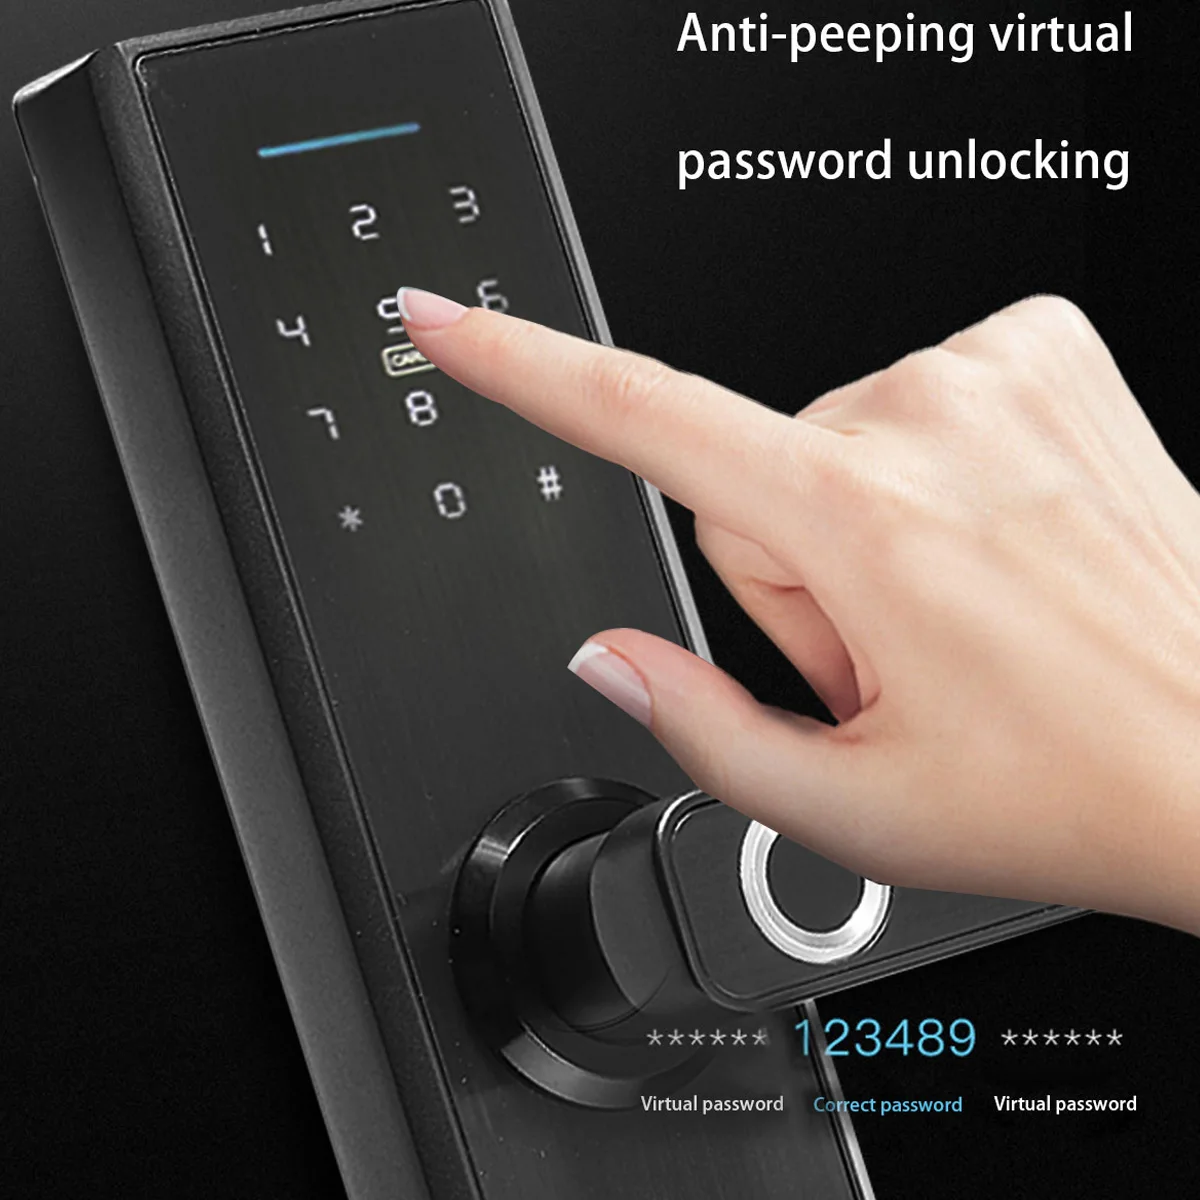 Умный дверной кодовый замок электронный дверной биометрический замок отпечатков пальцев/цифровой код/смарт-карта/ключ сенсорный для дома отель